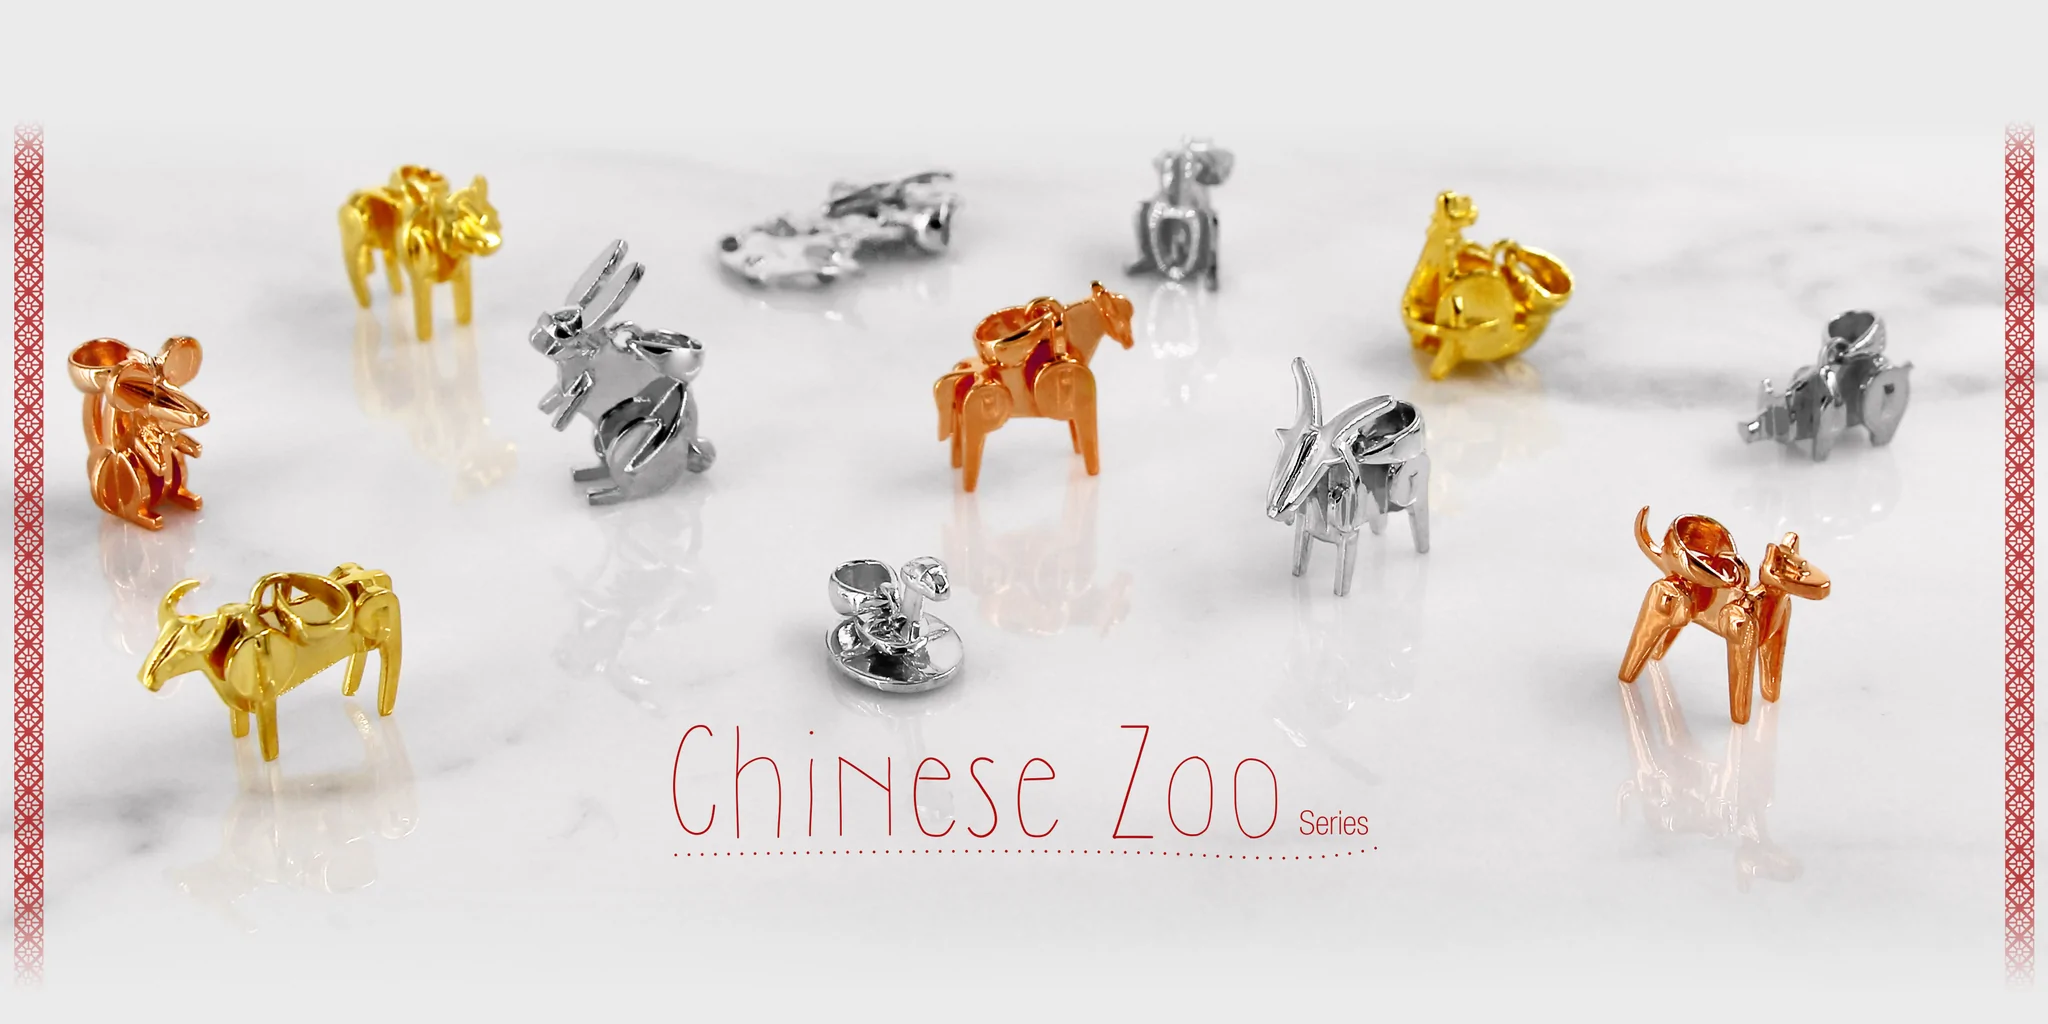 Chinese Zoo